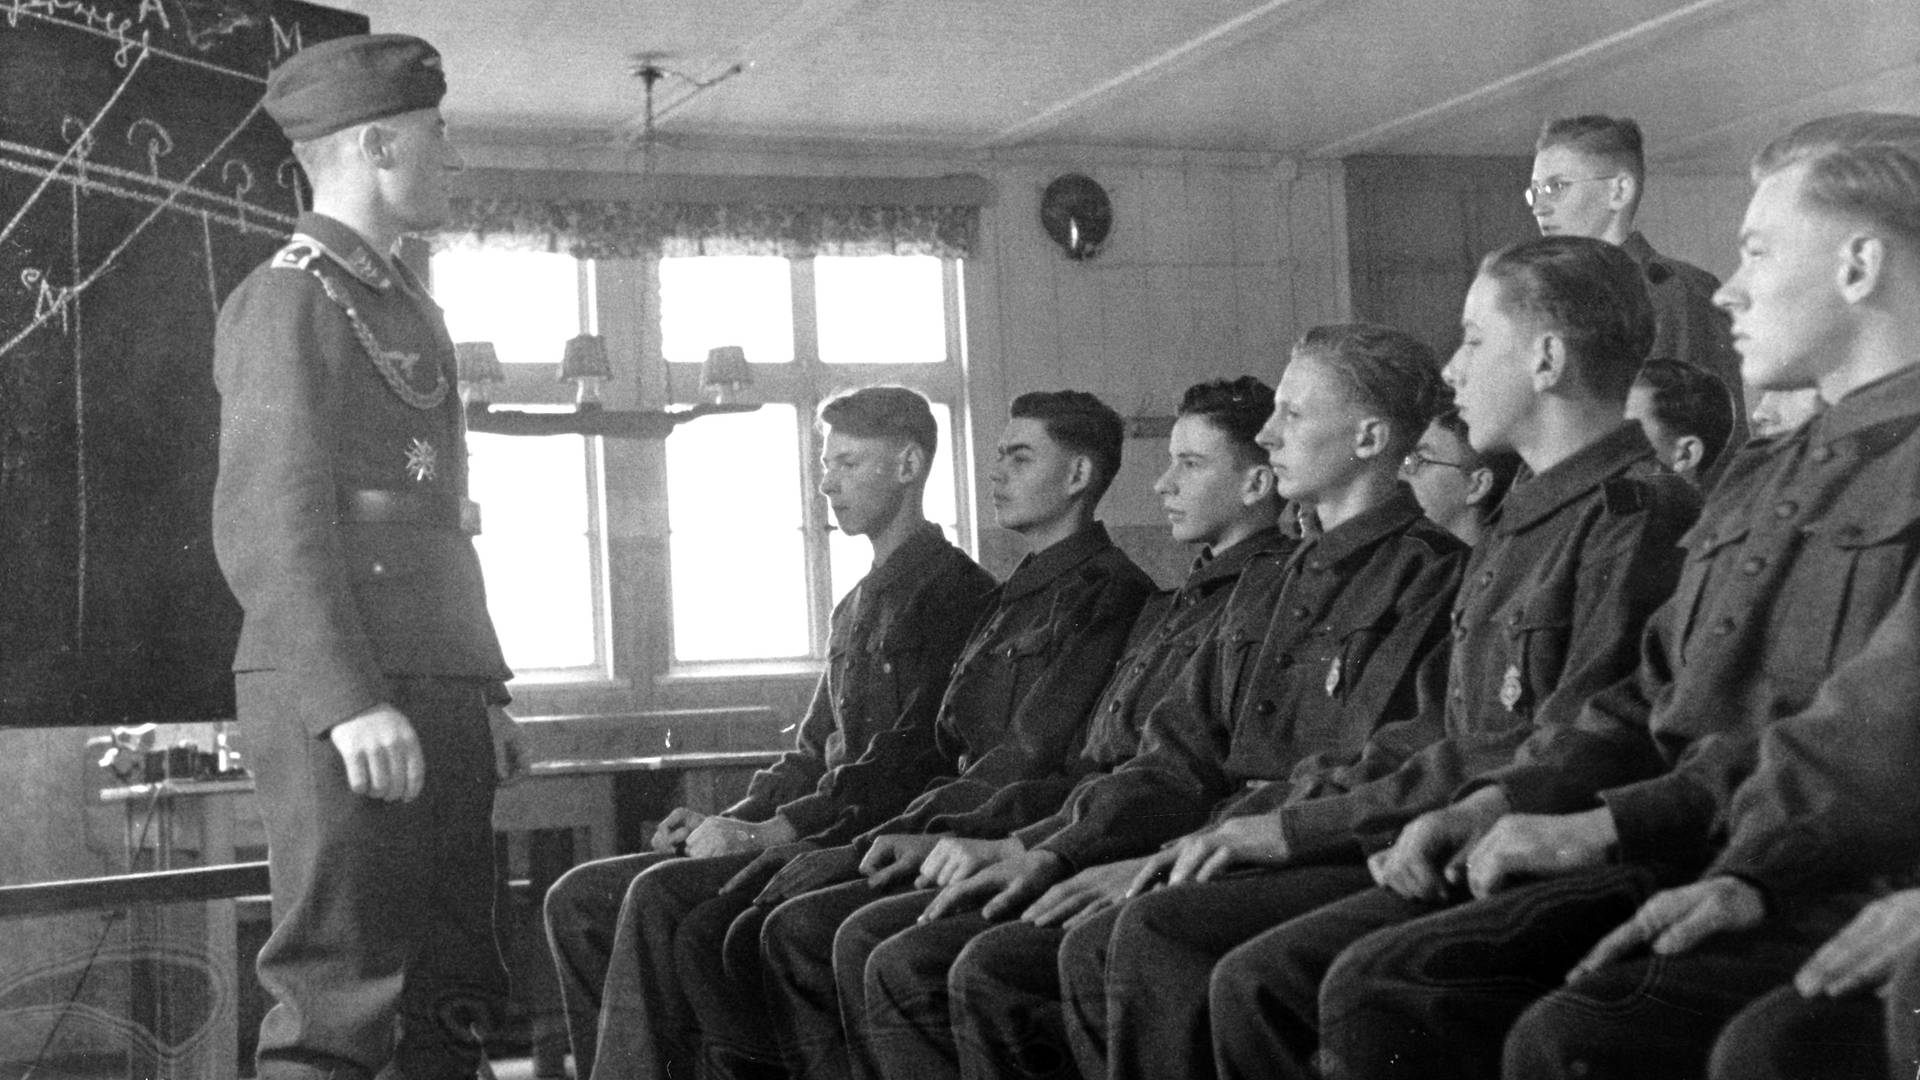 Junge Soldaten während des Zweiten Weltkriegs in einem Ausbildungsraum